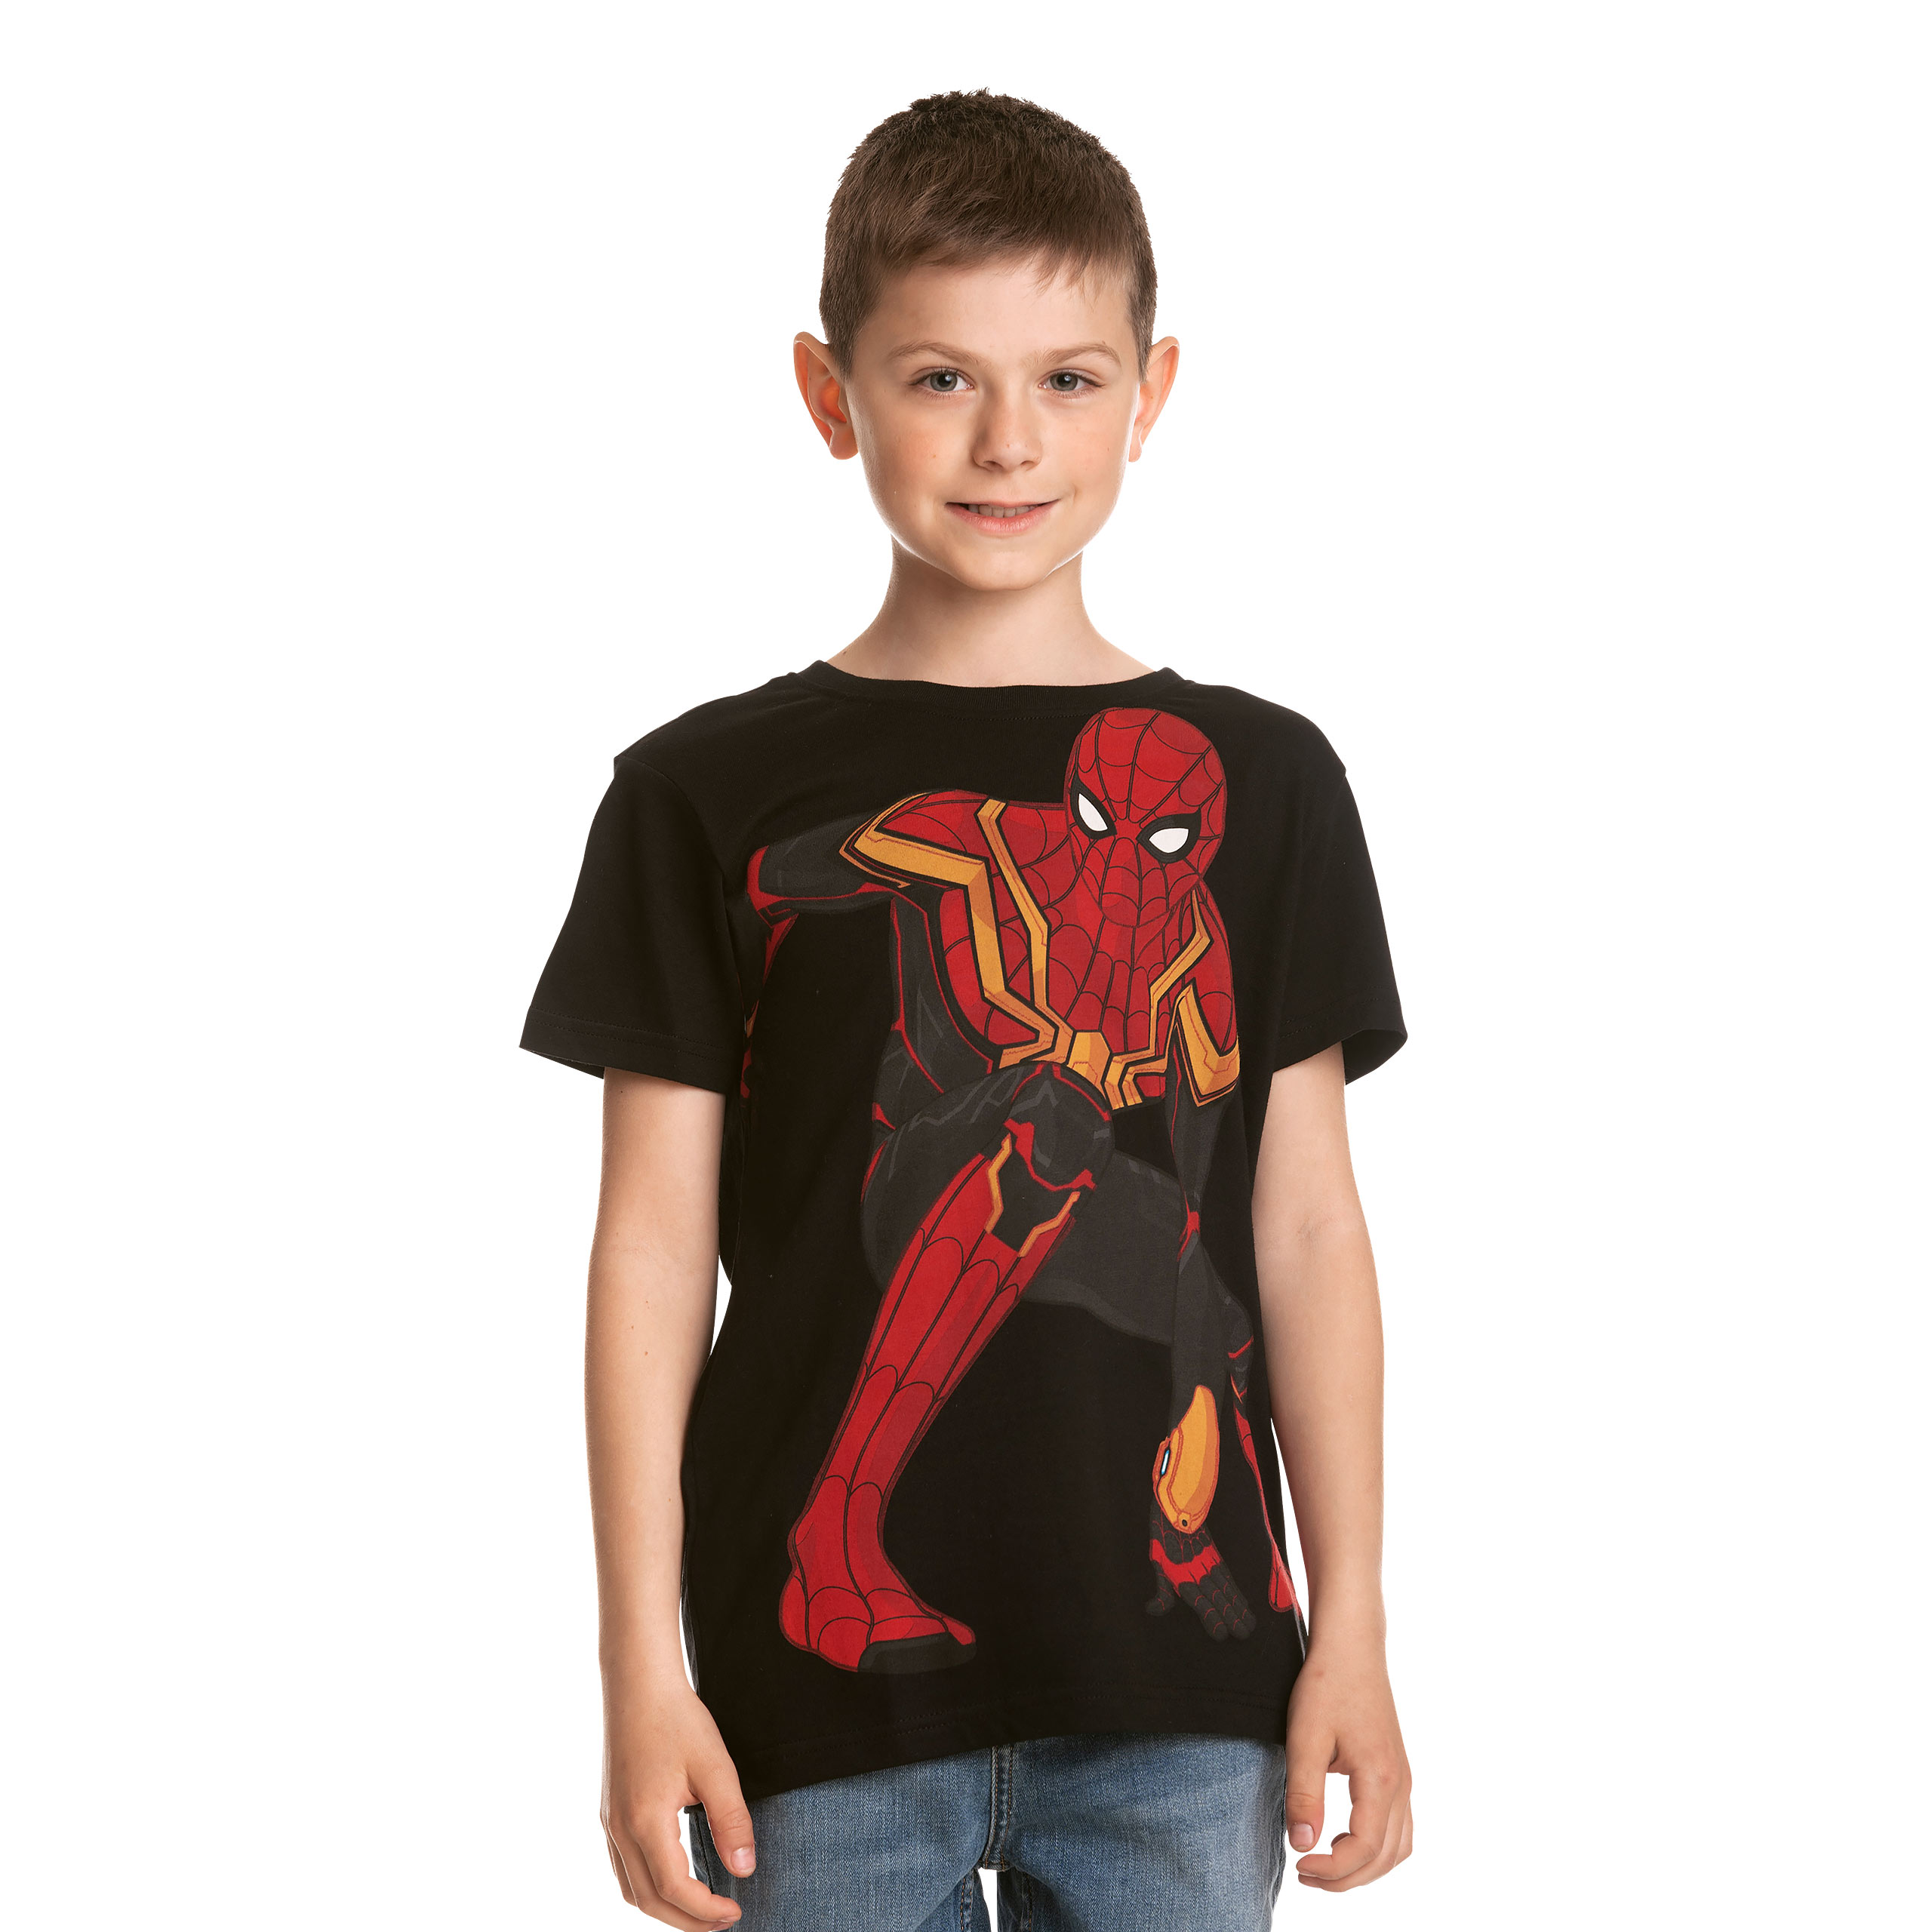 Spider-Man - Spidey Pose Kinder T-Shirt Zwart